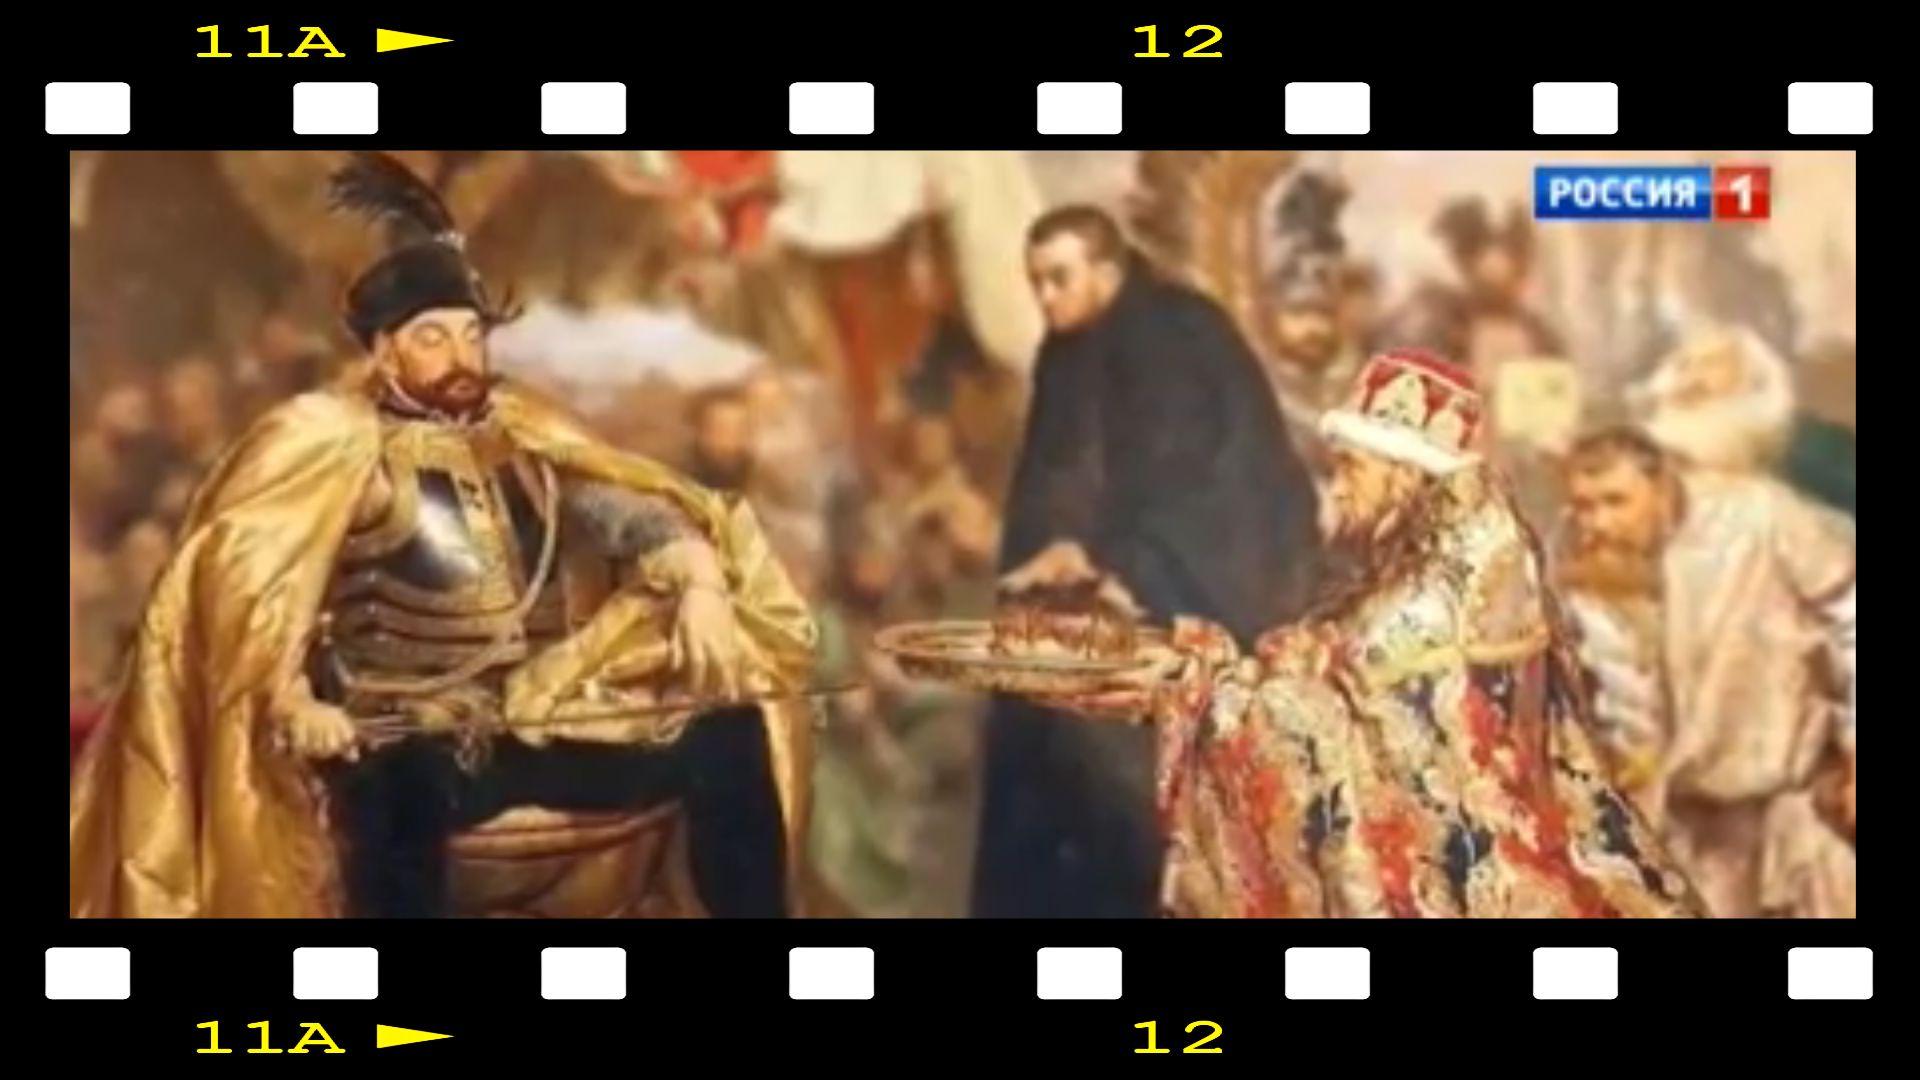 Grafika" wstawiony w klatkę filmową obraz przedstawiający polskiego króla w szatach z XVI wieku i kęczącego przed nim rosyjskiego caramożnowładcę